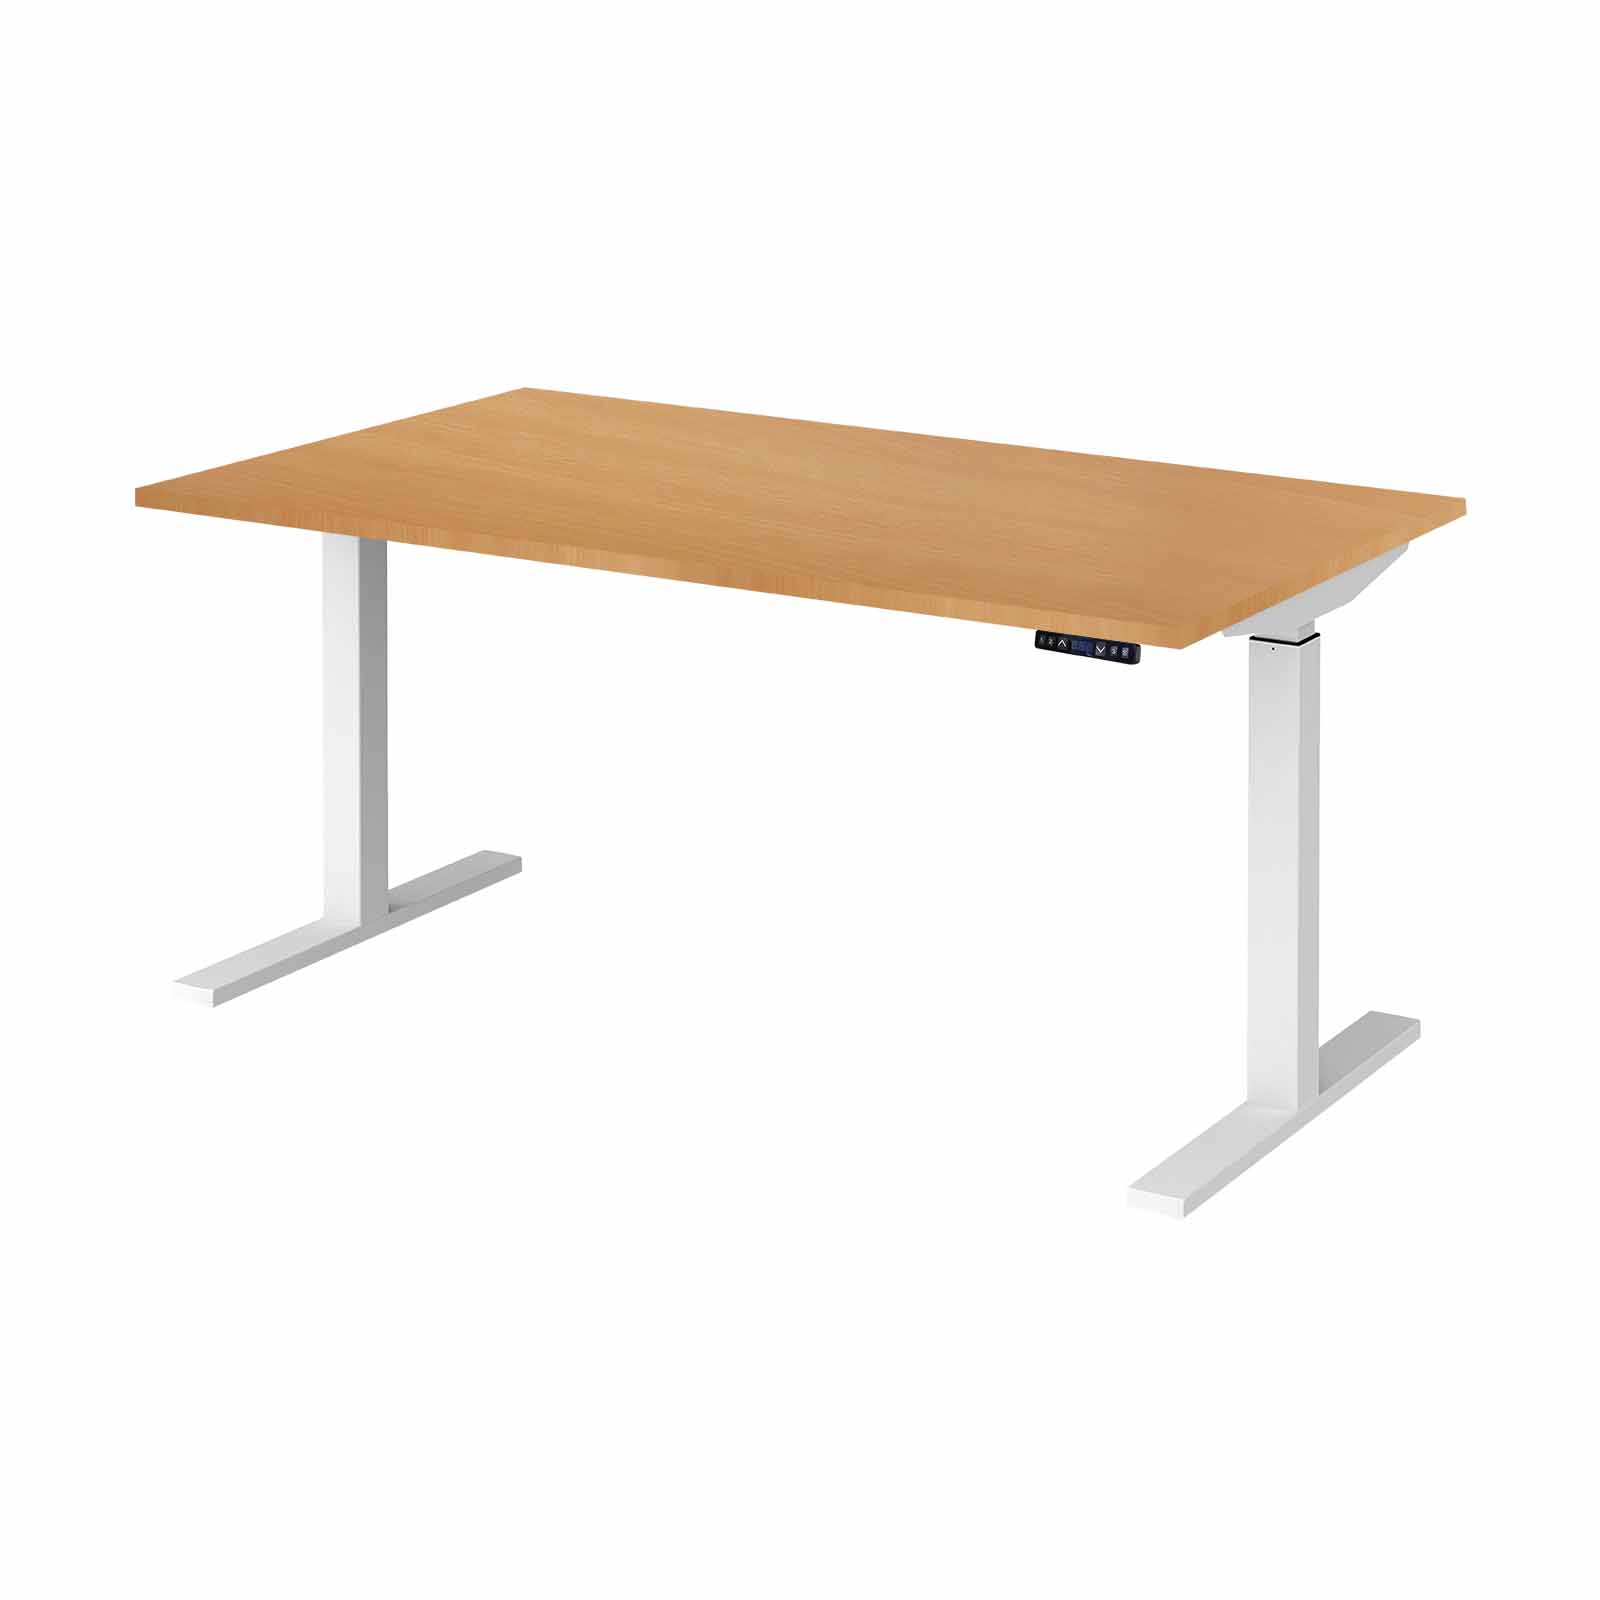 Single Person - Aspire Sit/stand Desk